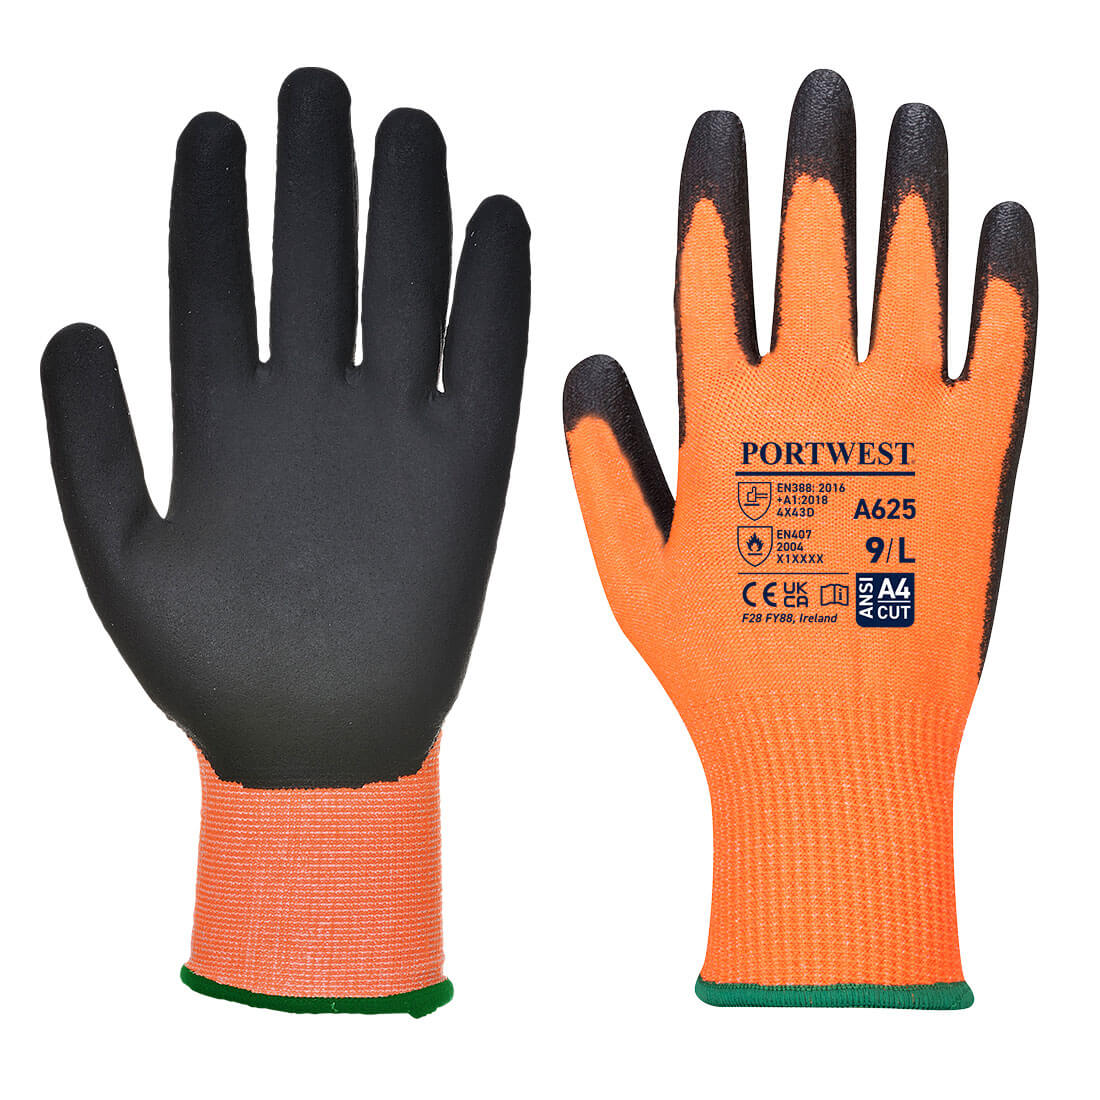 A625 - Vis-Tex Cut Resistant Glove - PU